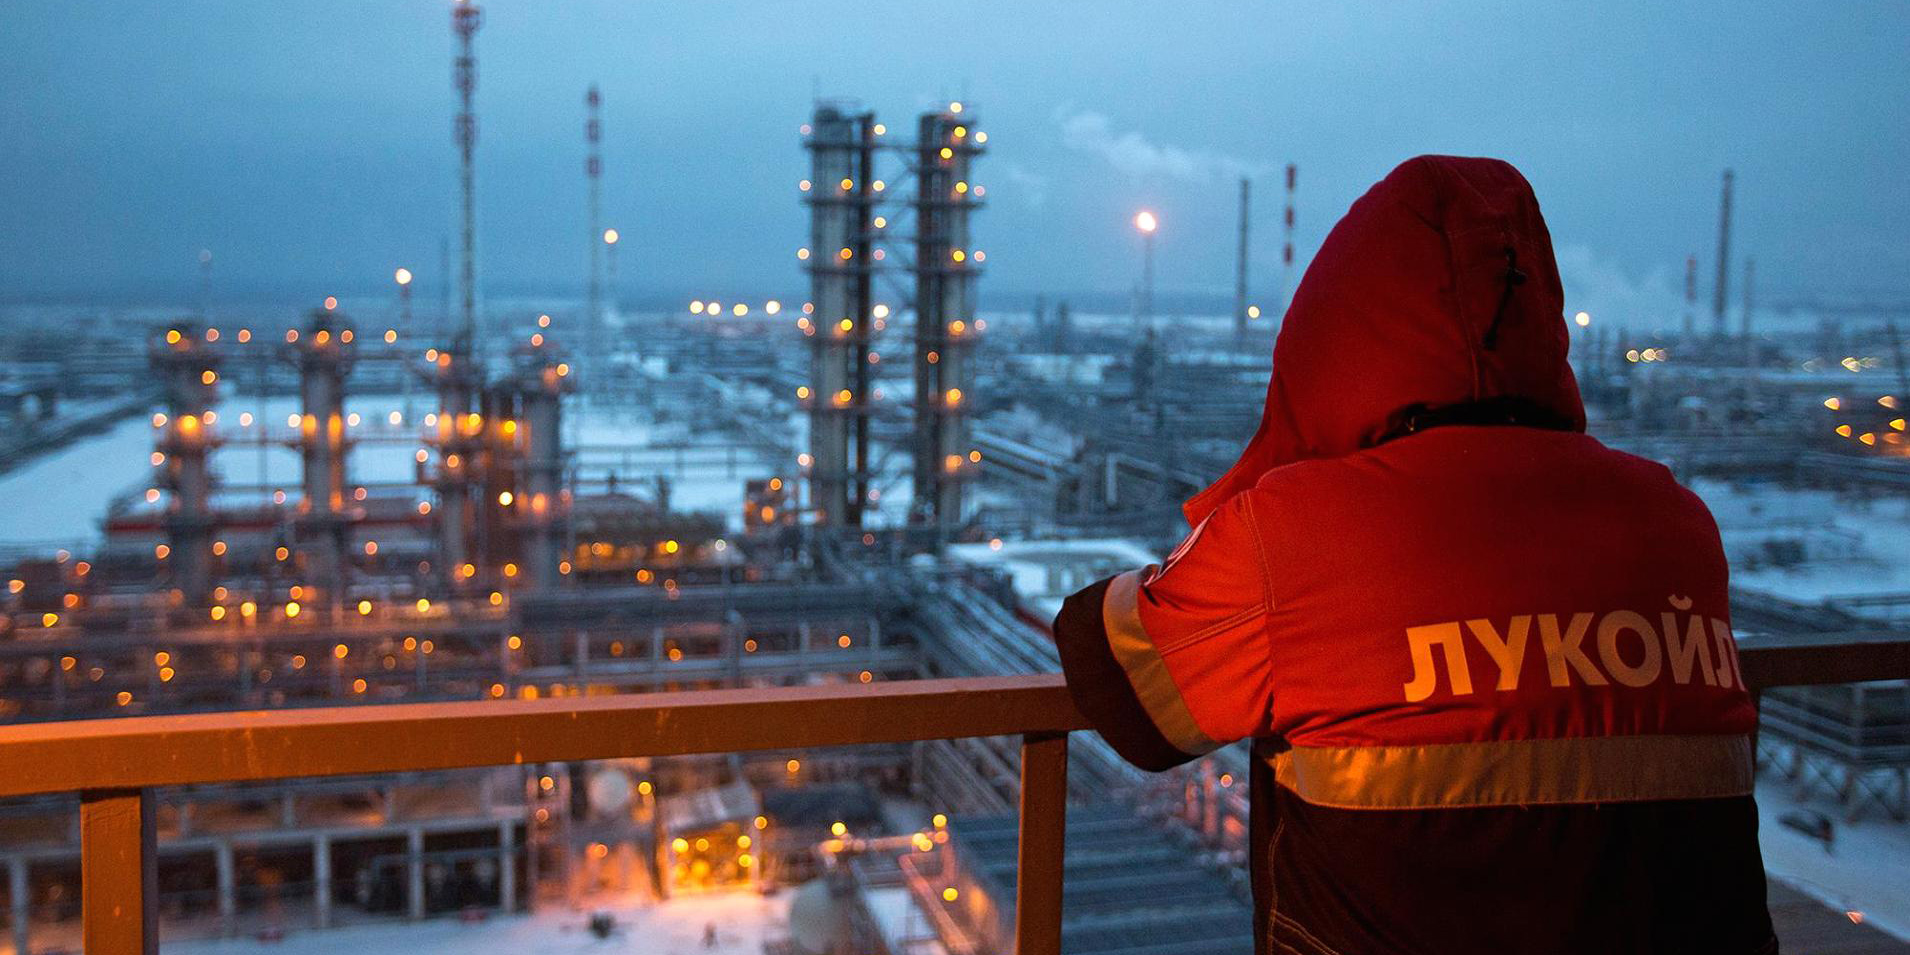 روسیه بزرگ ترین تولید کننده نفت جهان شد